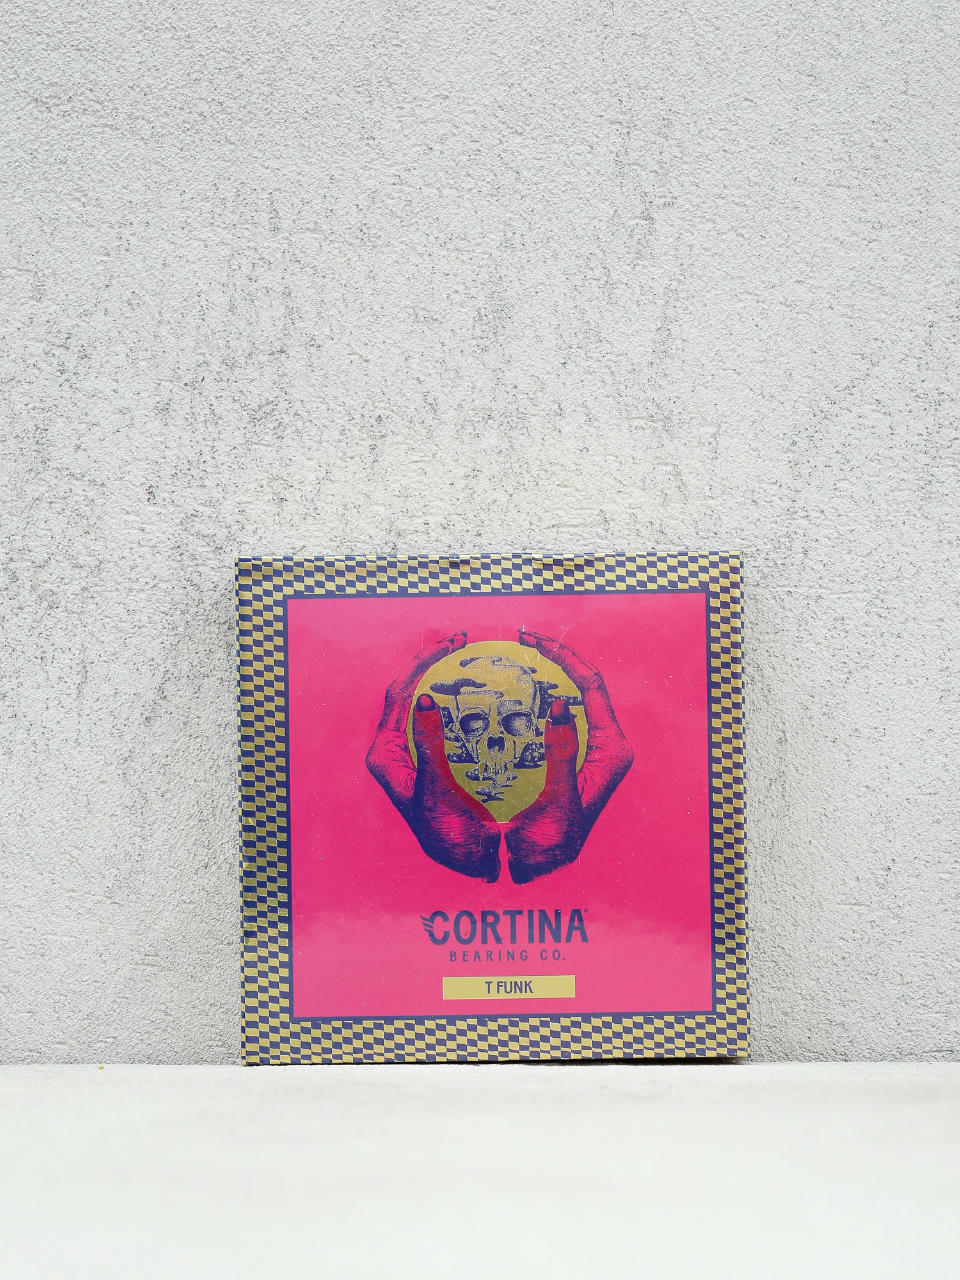 Ložiska Cortina T Funk Signature Series 2 (pink/blue)